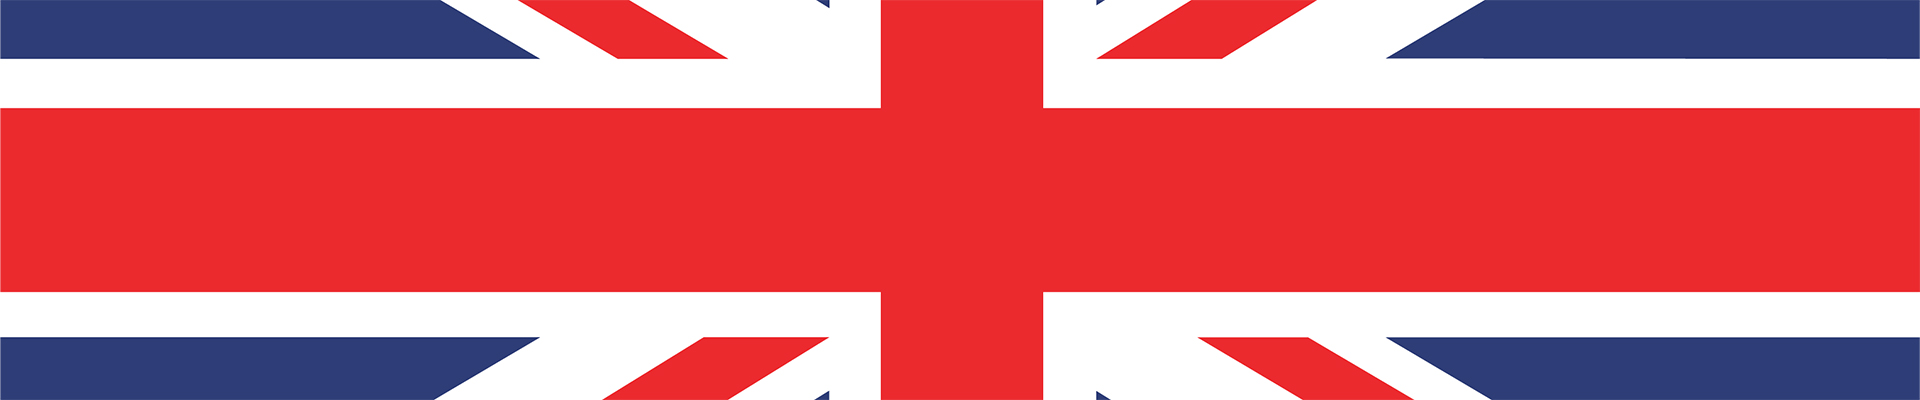 Fransa Açık canlı akışı — İngiliz bayrağı